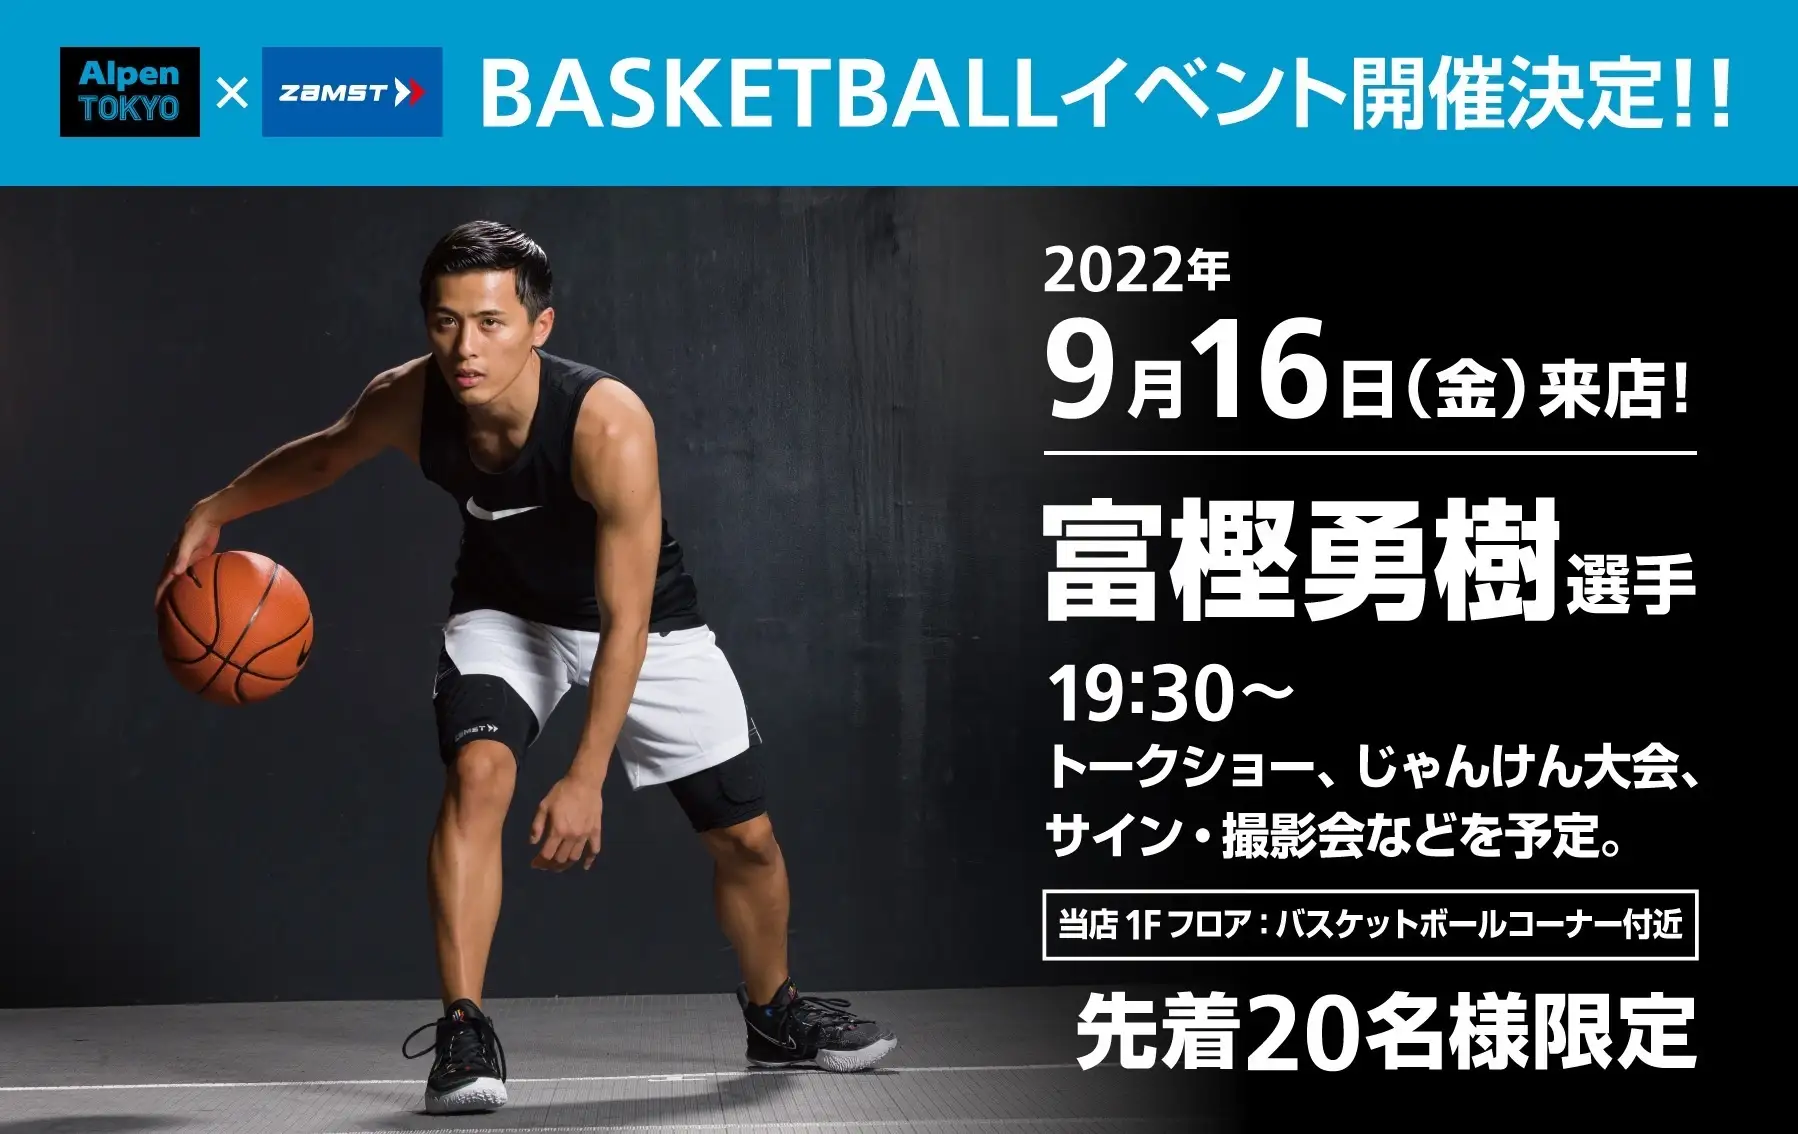 プロバスケットボールプレイヤー 富樫勇樹選手のトークイベントをアルペン史上最大の旗艦店「Alpen TOKYO」にて開催